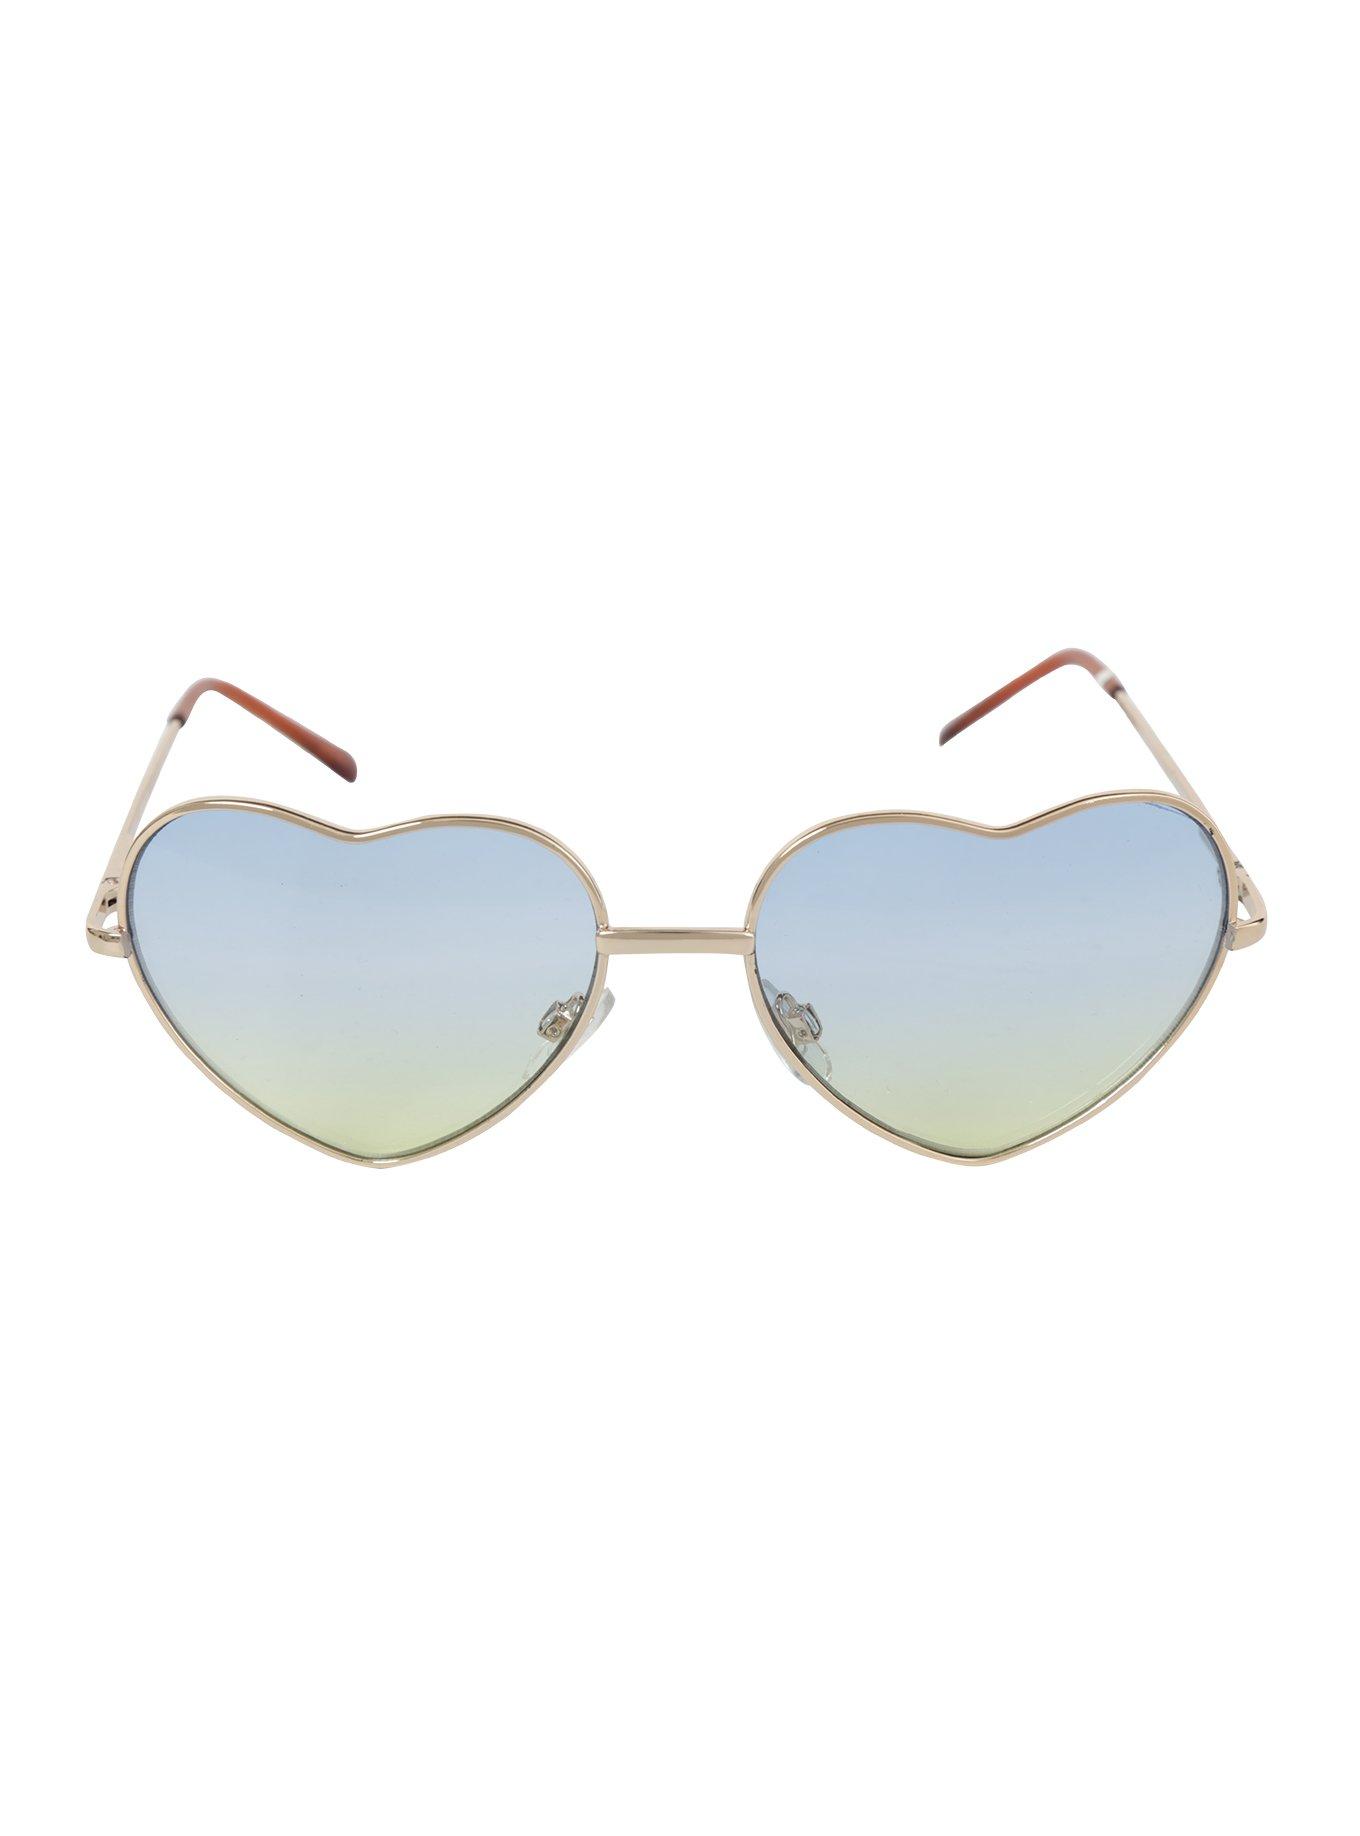 Blue & Yellow Lens Gold Heart Frame Sunglasses, , alternate